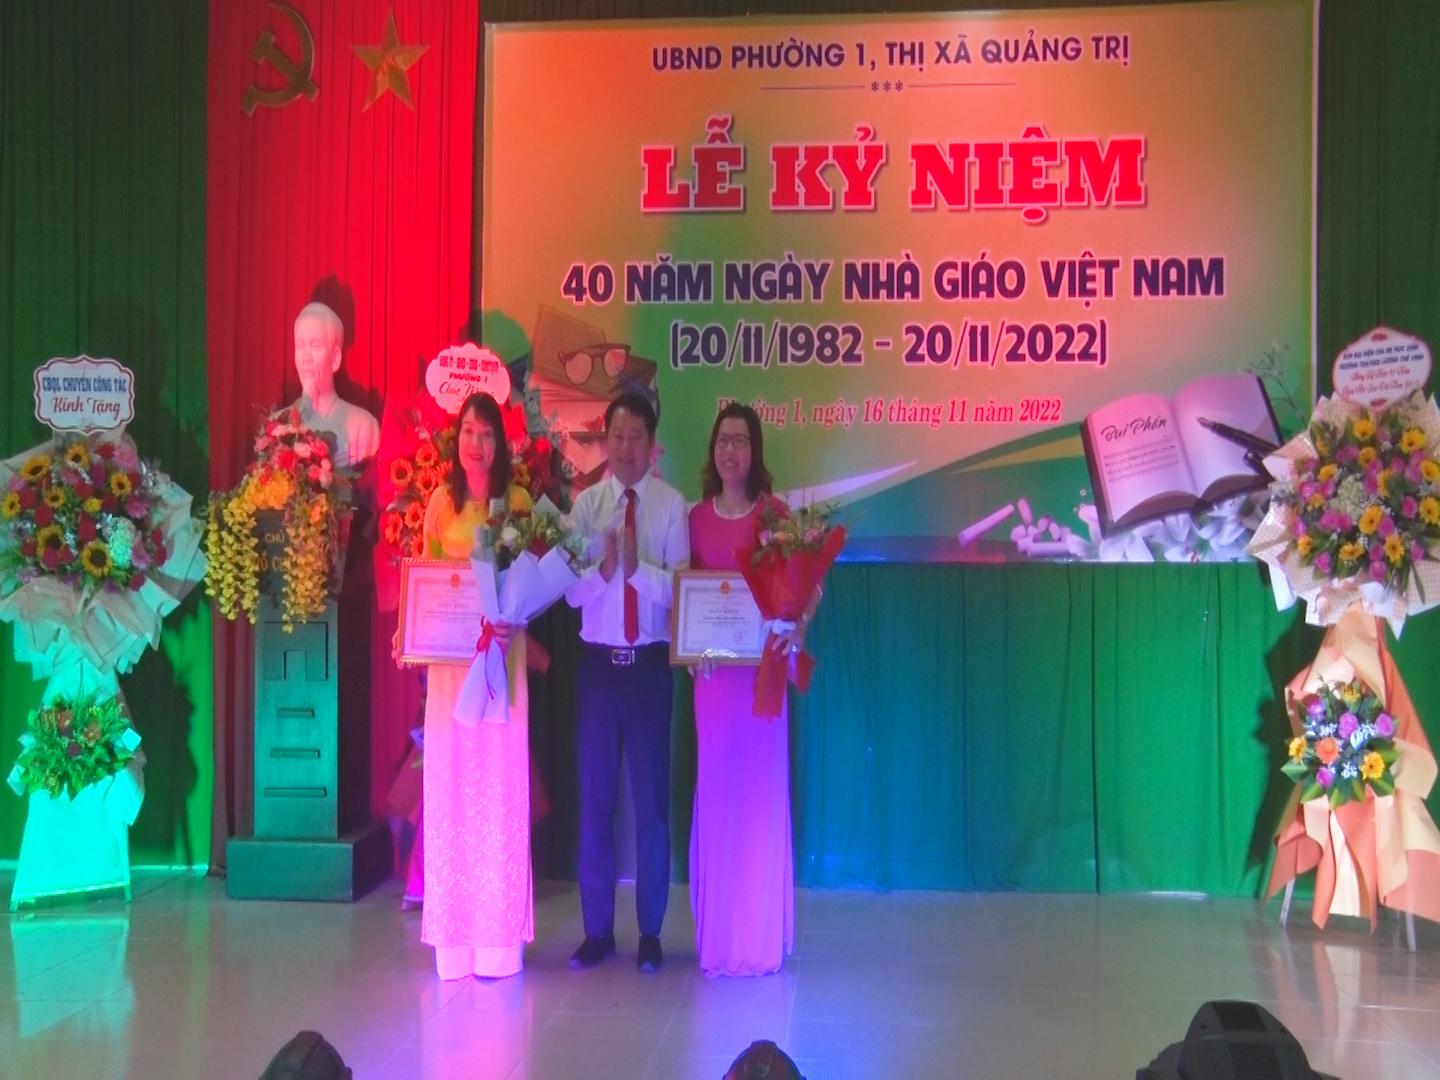 UBND Phường 1 tổ chức Lễ kỷ niệm 40 năm ngày Nhà giáo Việt Nam 20/11